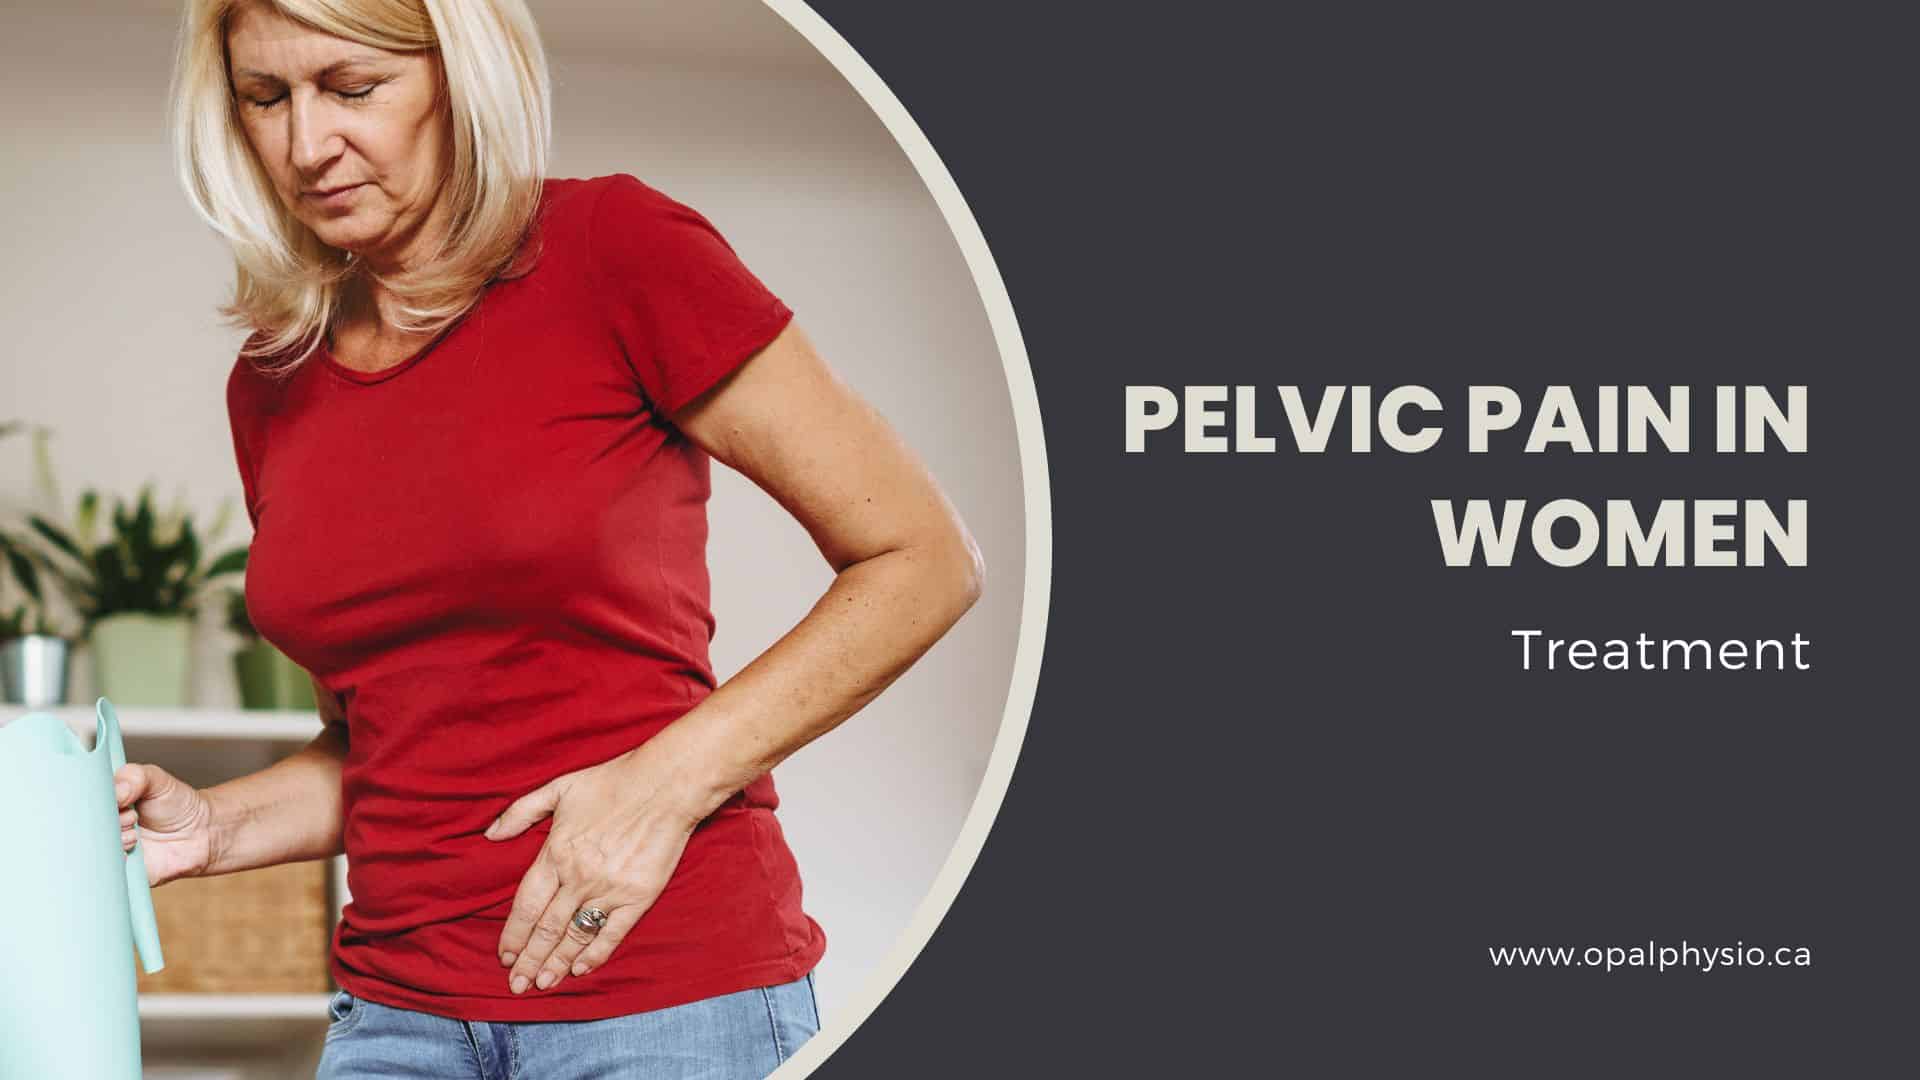 Pelvic pain in women 